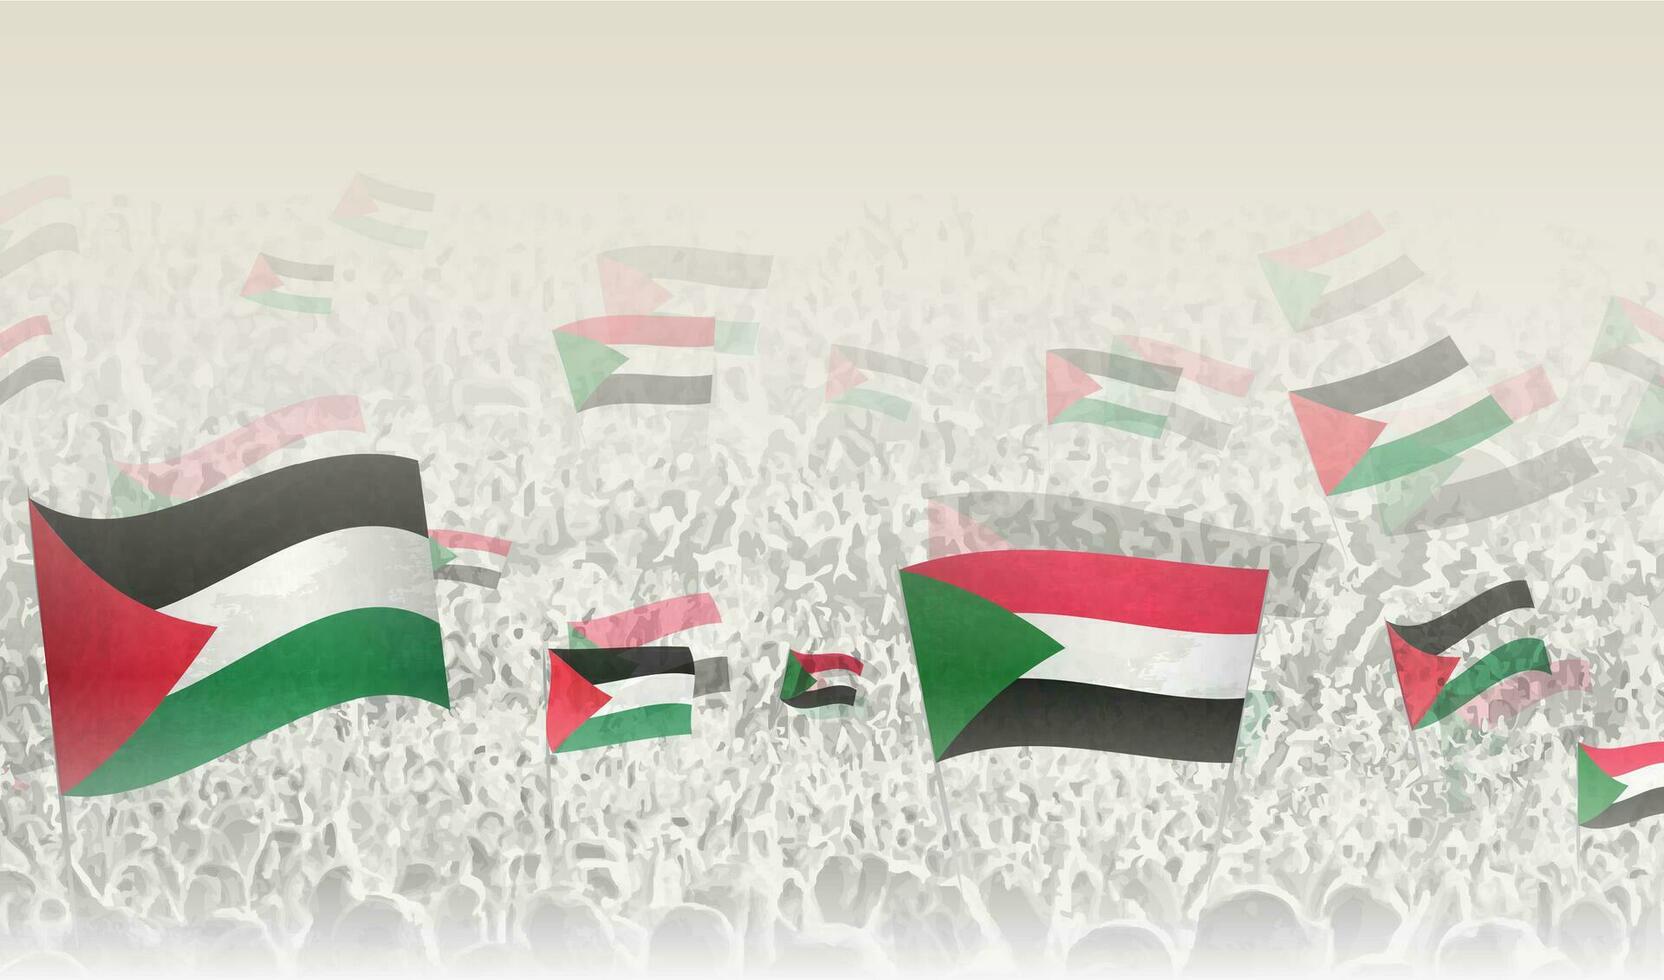 palestina och sudan flaggor i en folkmassan av glädjande människor. vektor